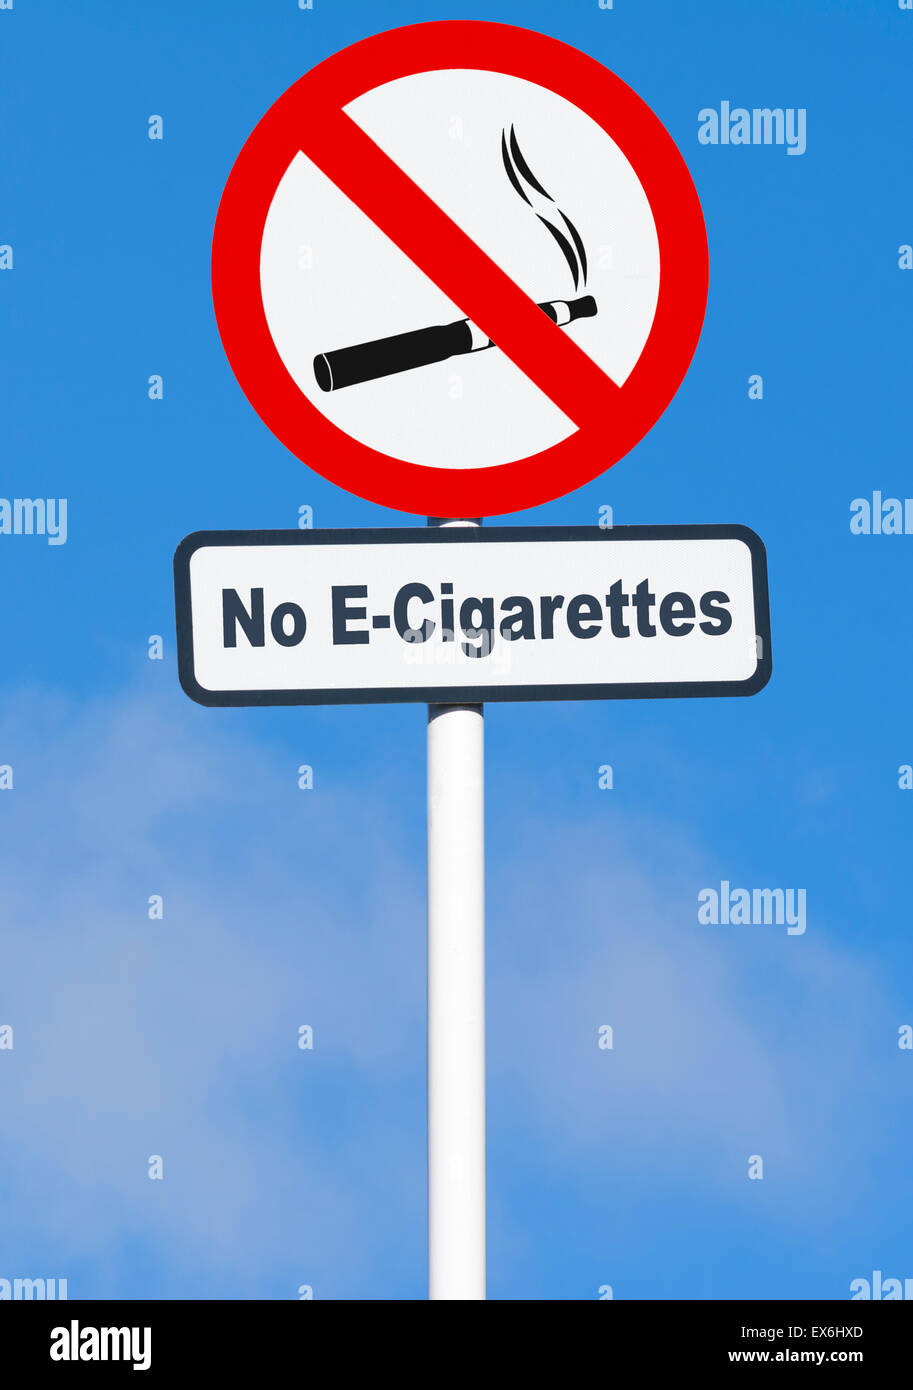 Sigarette elettroniche immagini e fotografie stock ad alta risoluzione -  Alamy